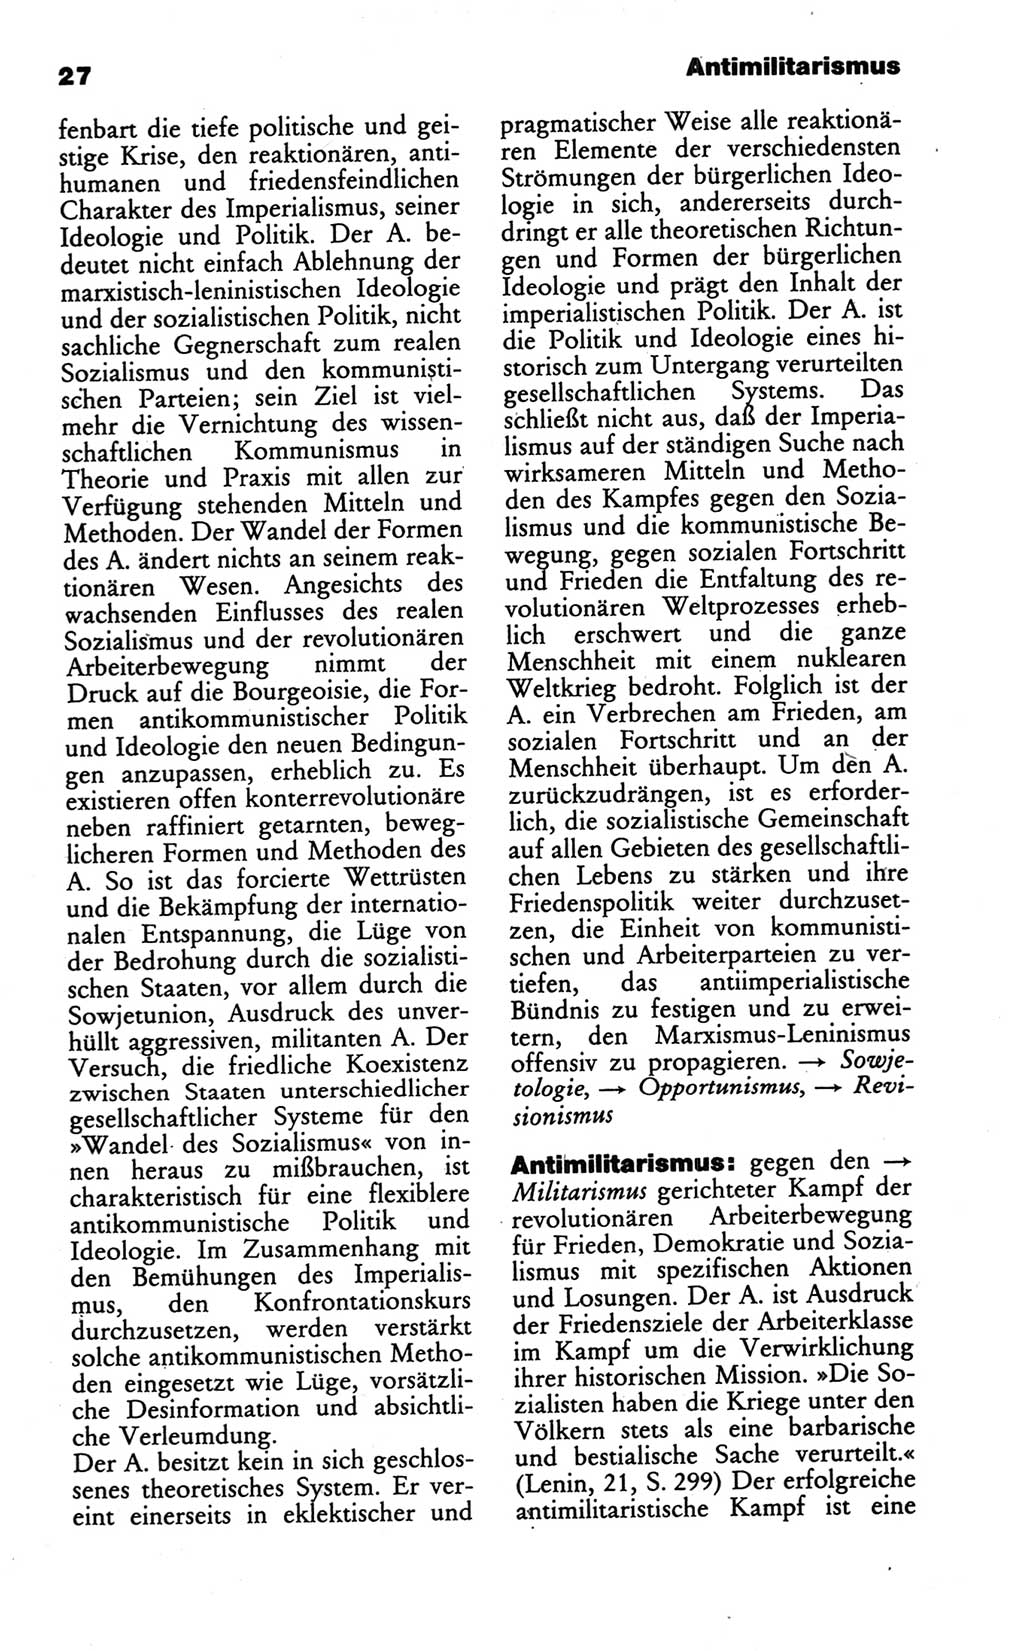 Wörterbuch des wissenschaftlichen Kommunismus [Deutsche Demokratische Republik (DDR)] 1986, Seite 27 (Wb. wiss. Komm. DDR 1986, S. 27)